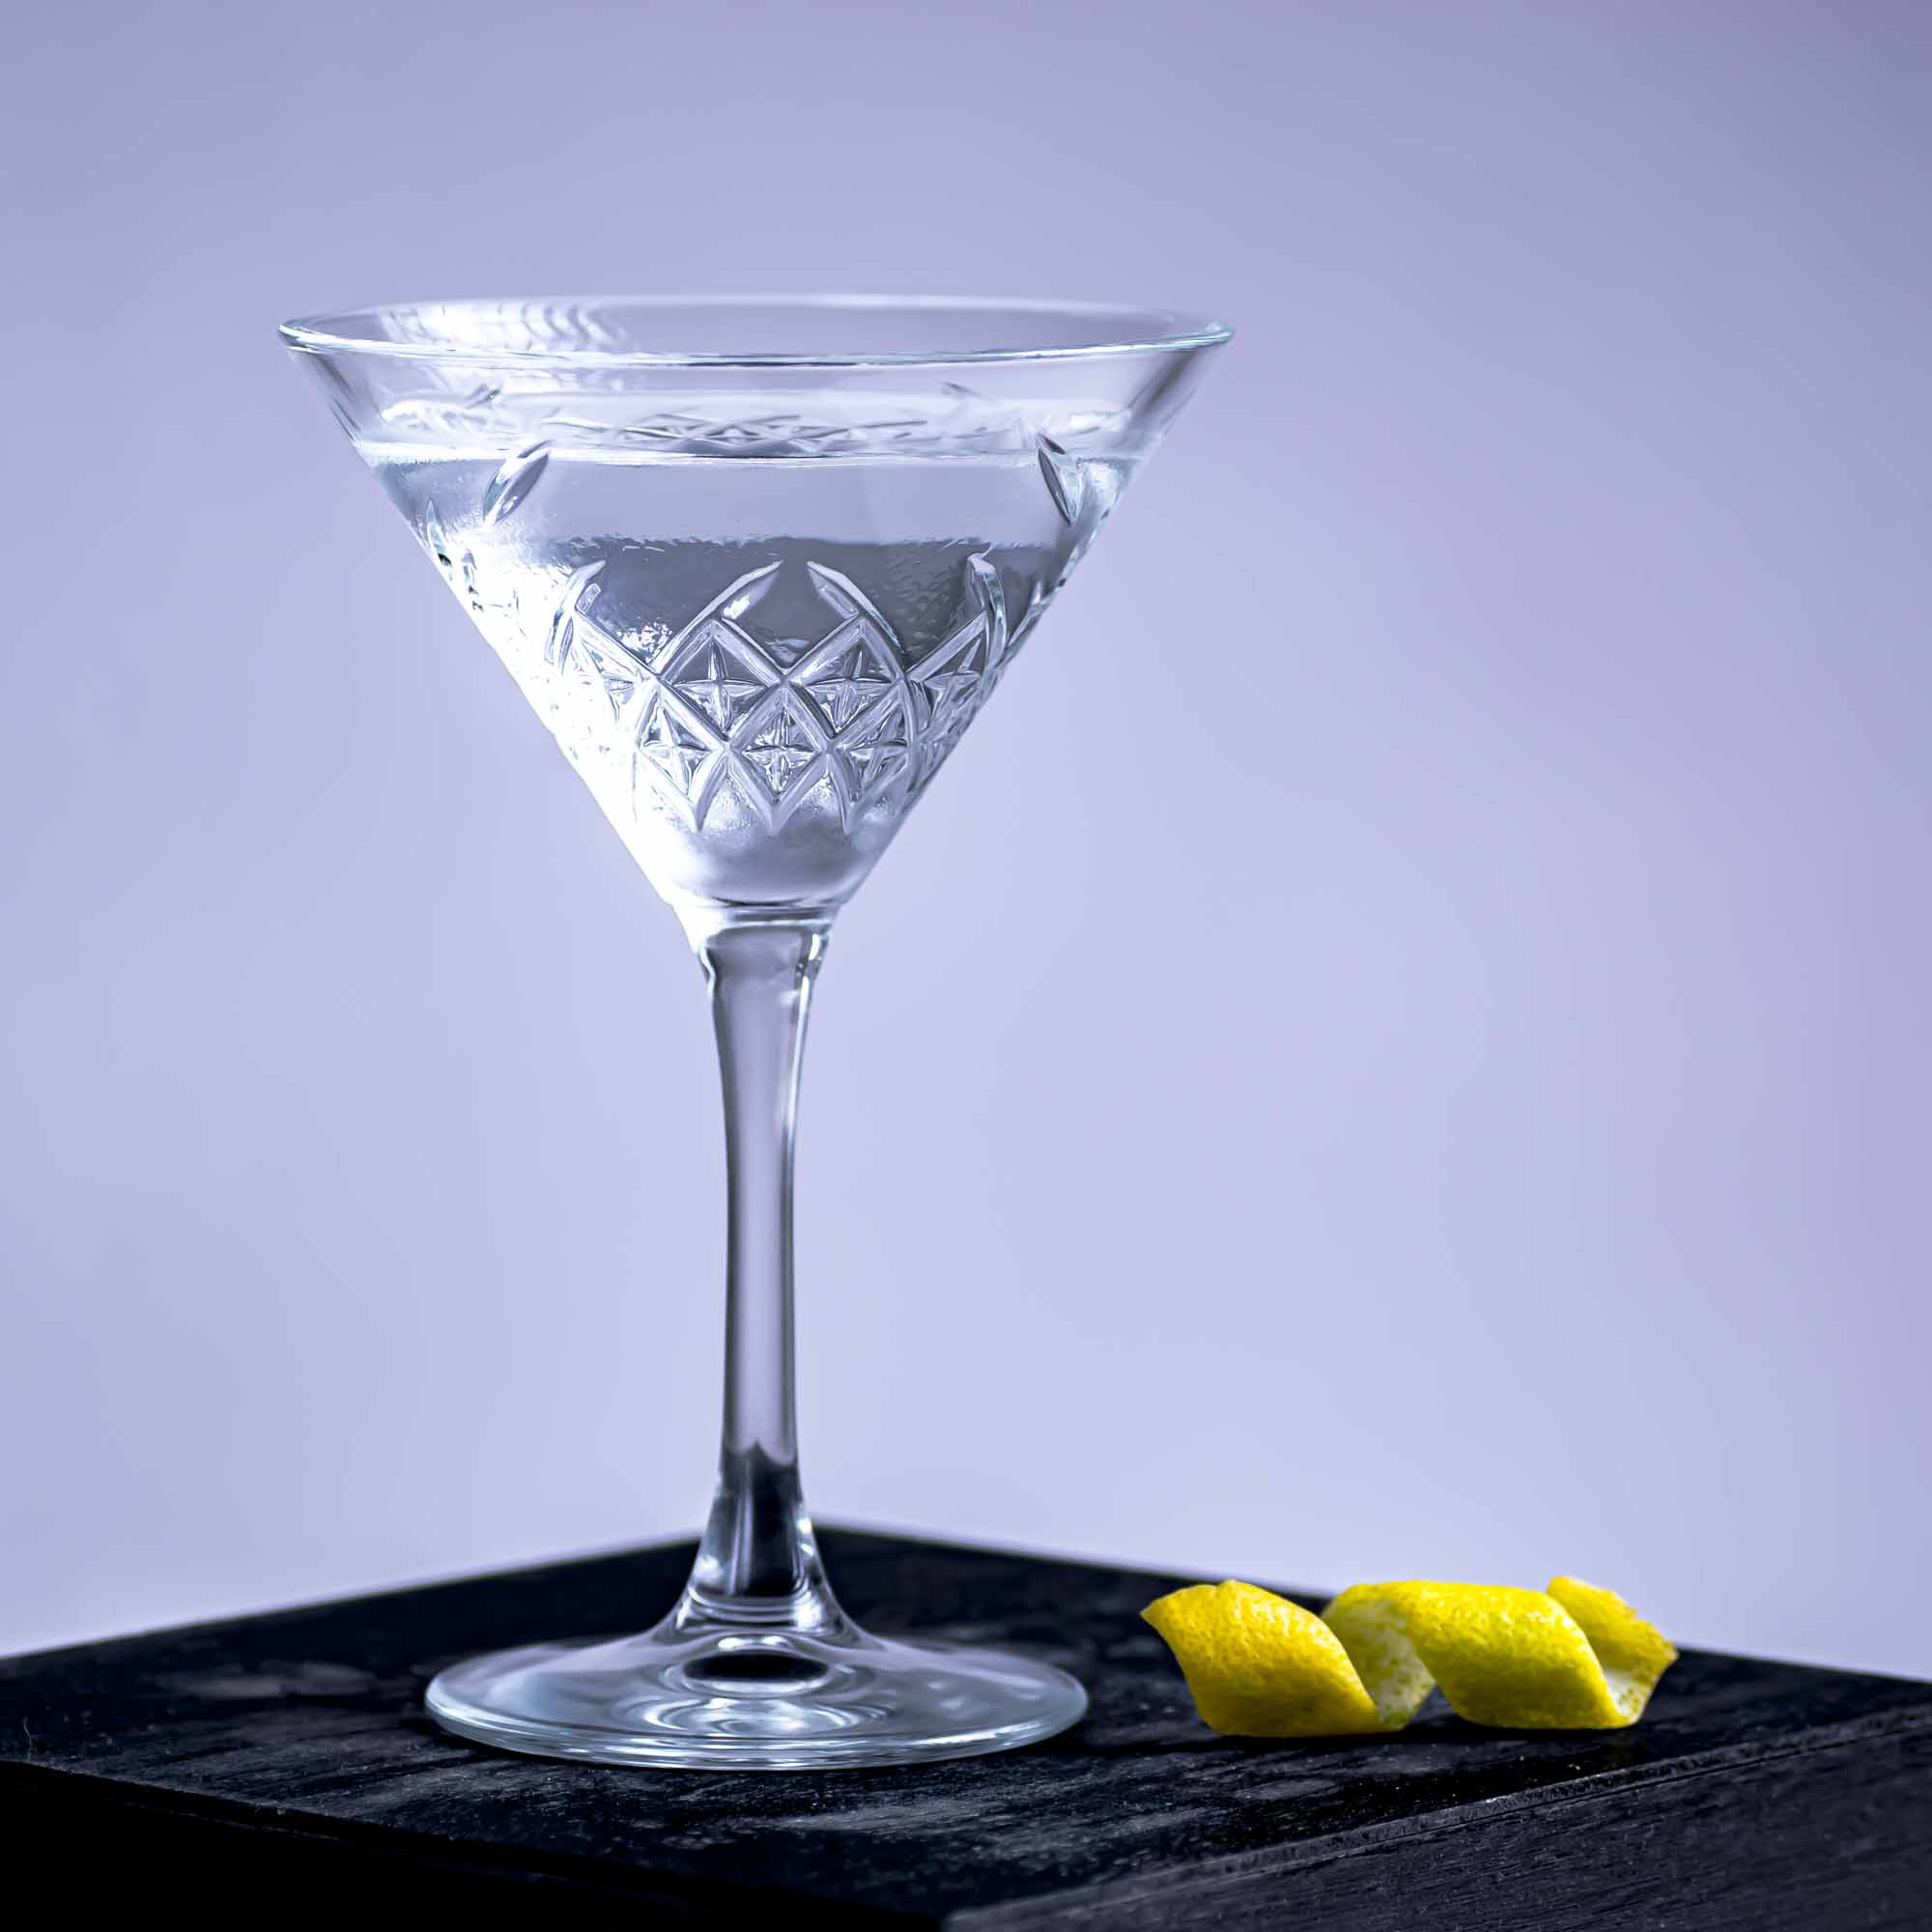 Un martini Montgomery fait avec 15 parties de gin, 1 partie de vermouth et une giclée d'amer à l'orange.